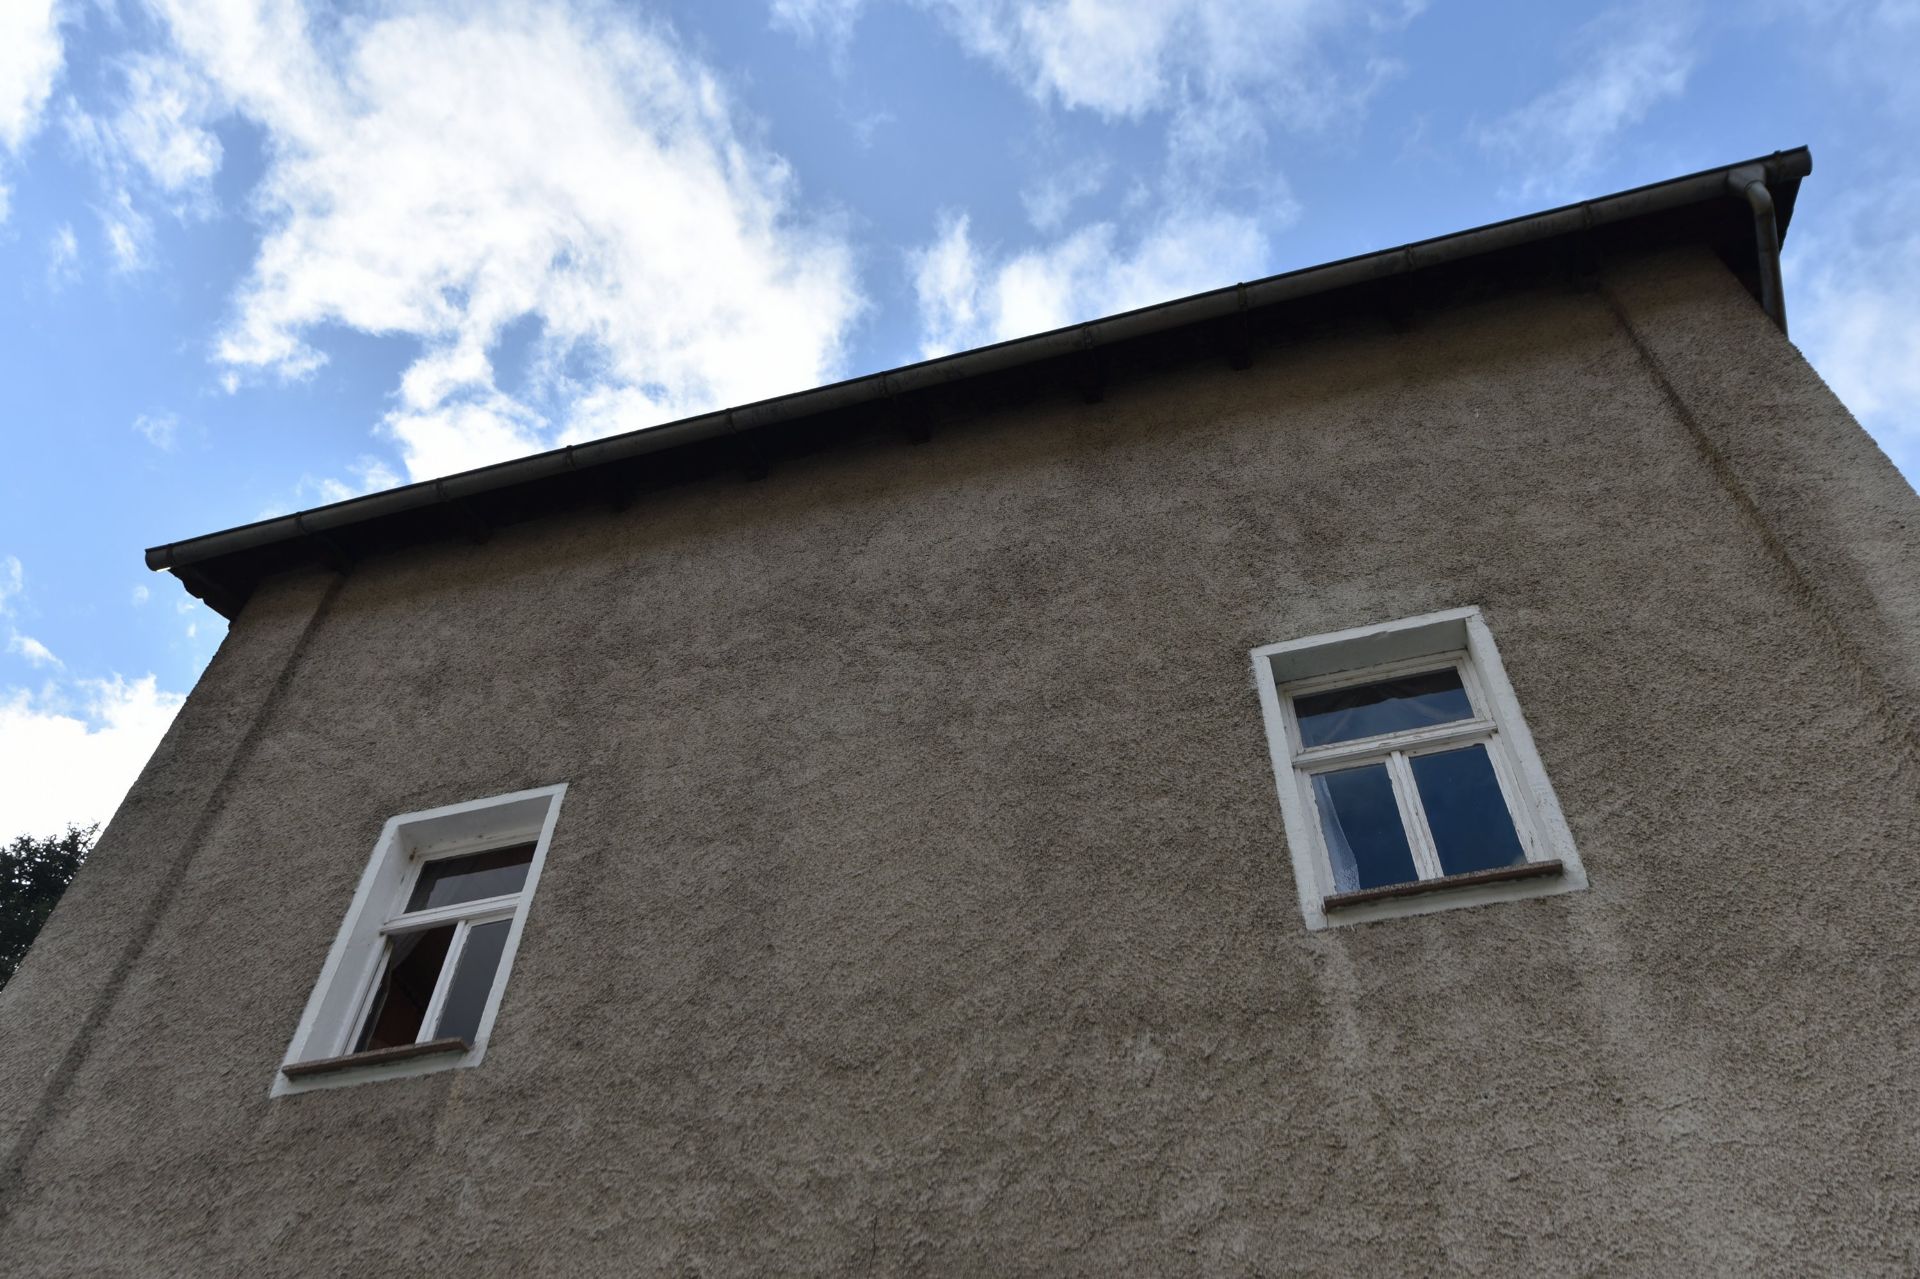 3 FLOOR HOUSE IN GORNAU, SAXONY, GERMANY - Image 10 of 62